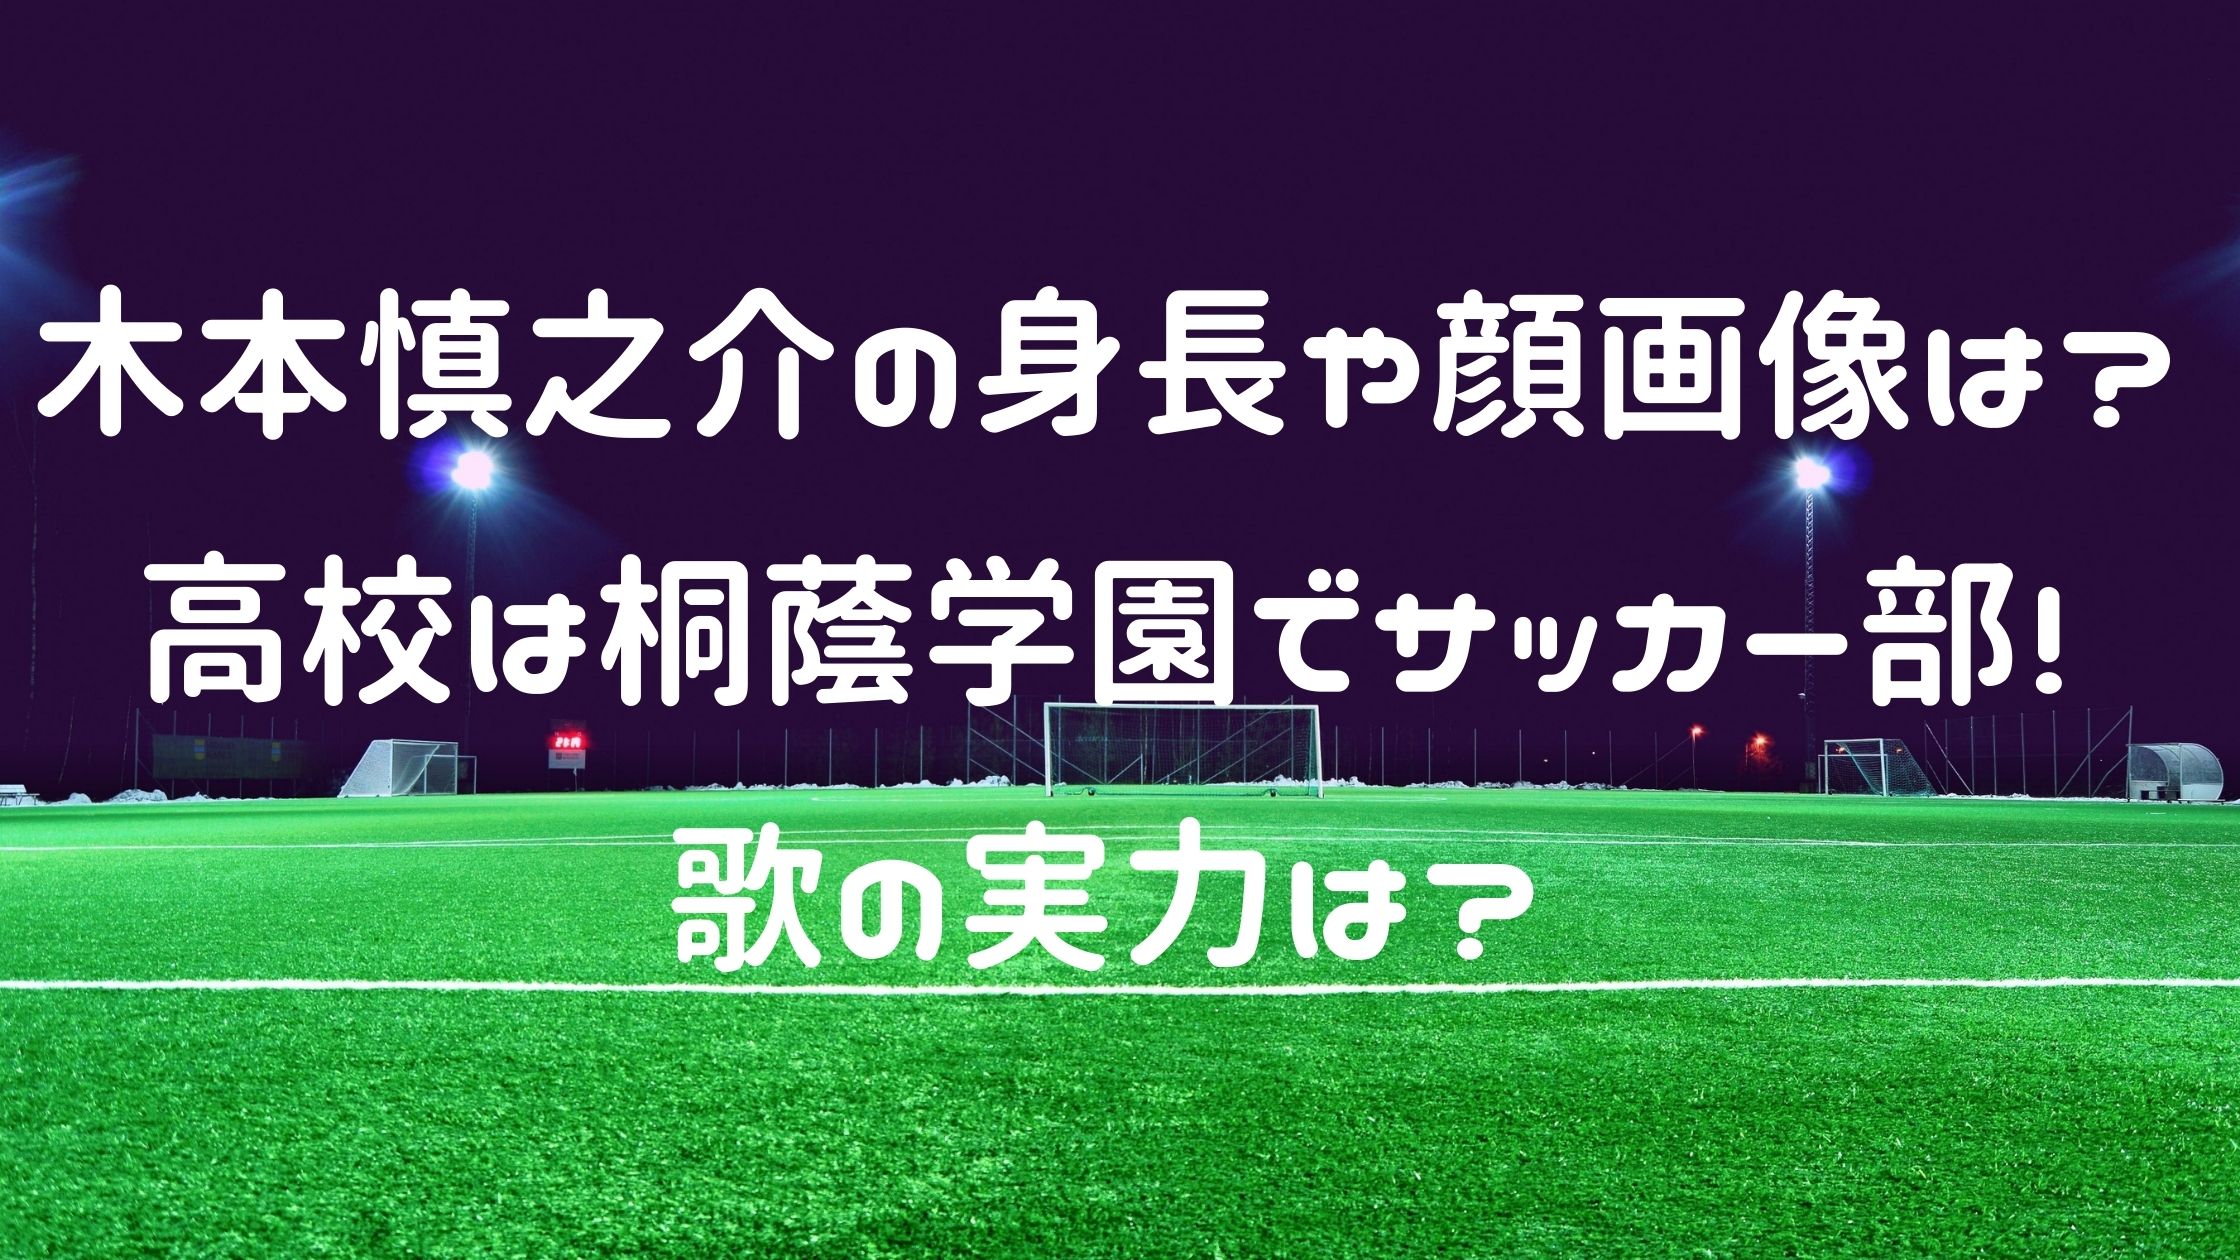 木本慎之介の身長や顔画像は 高校は桐蔭学園でサッカー部 歌の実力は Naohana Blog